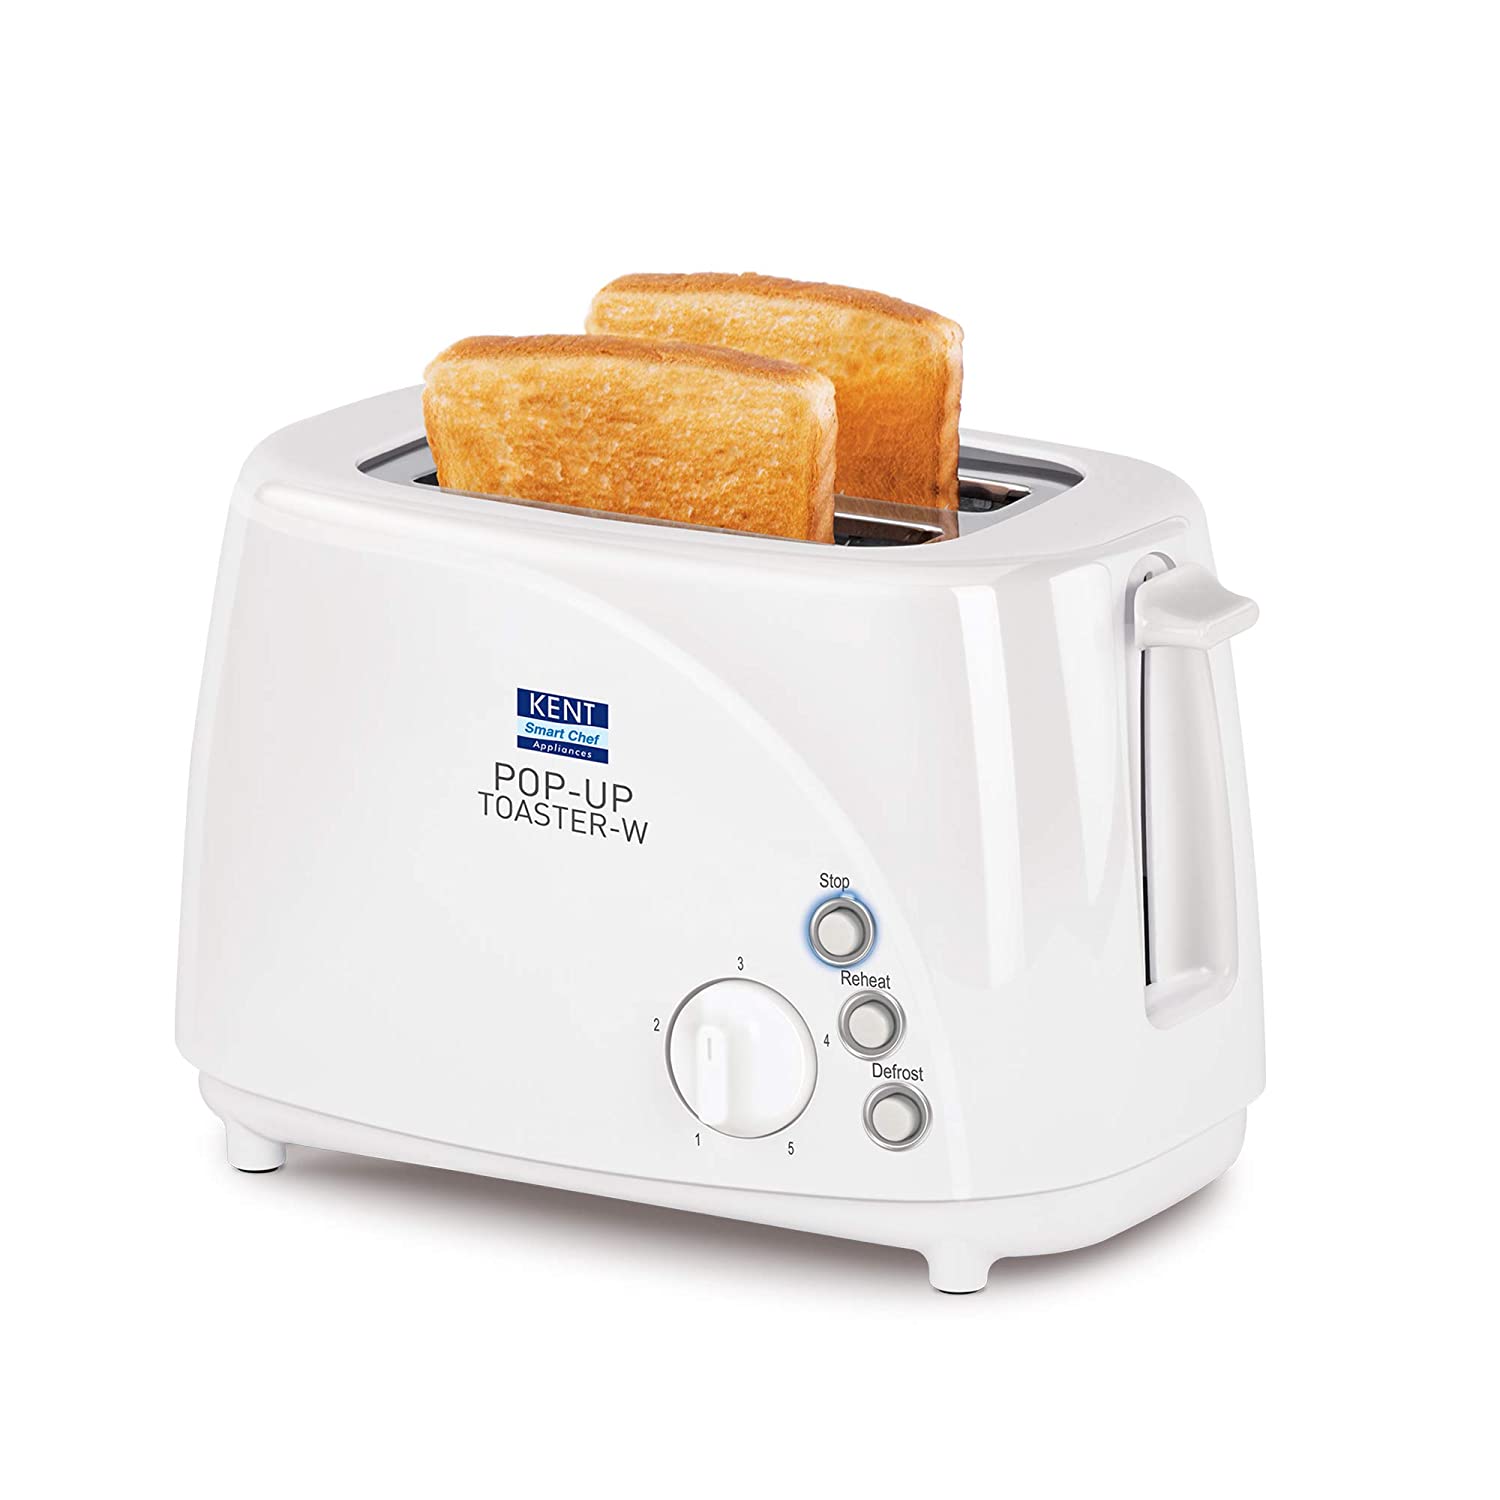 KENT Pop Up Toaster